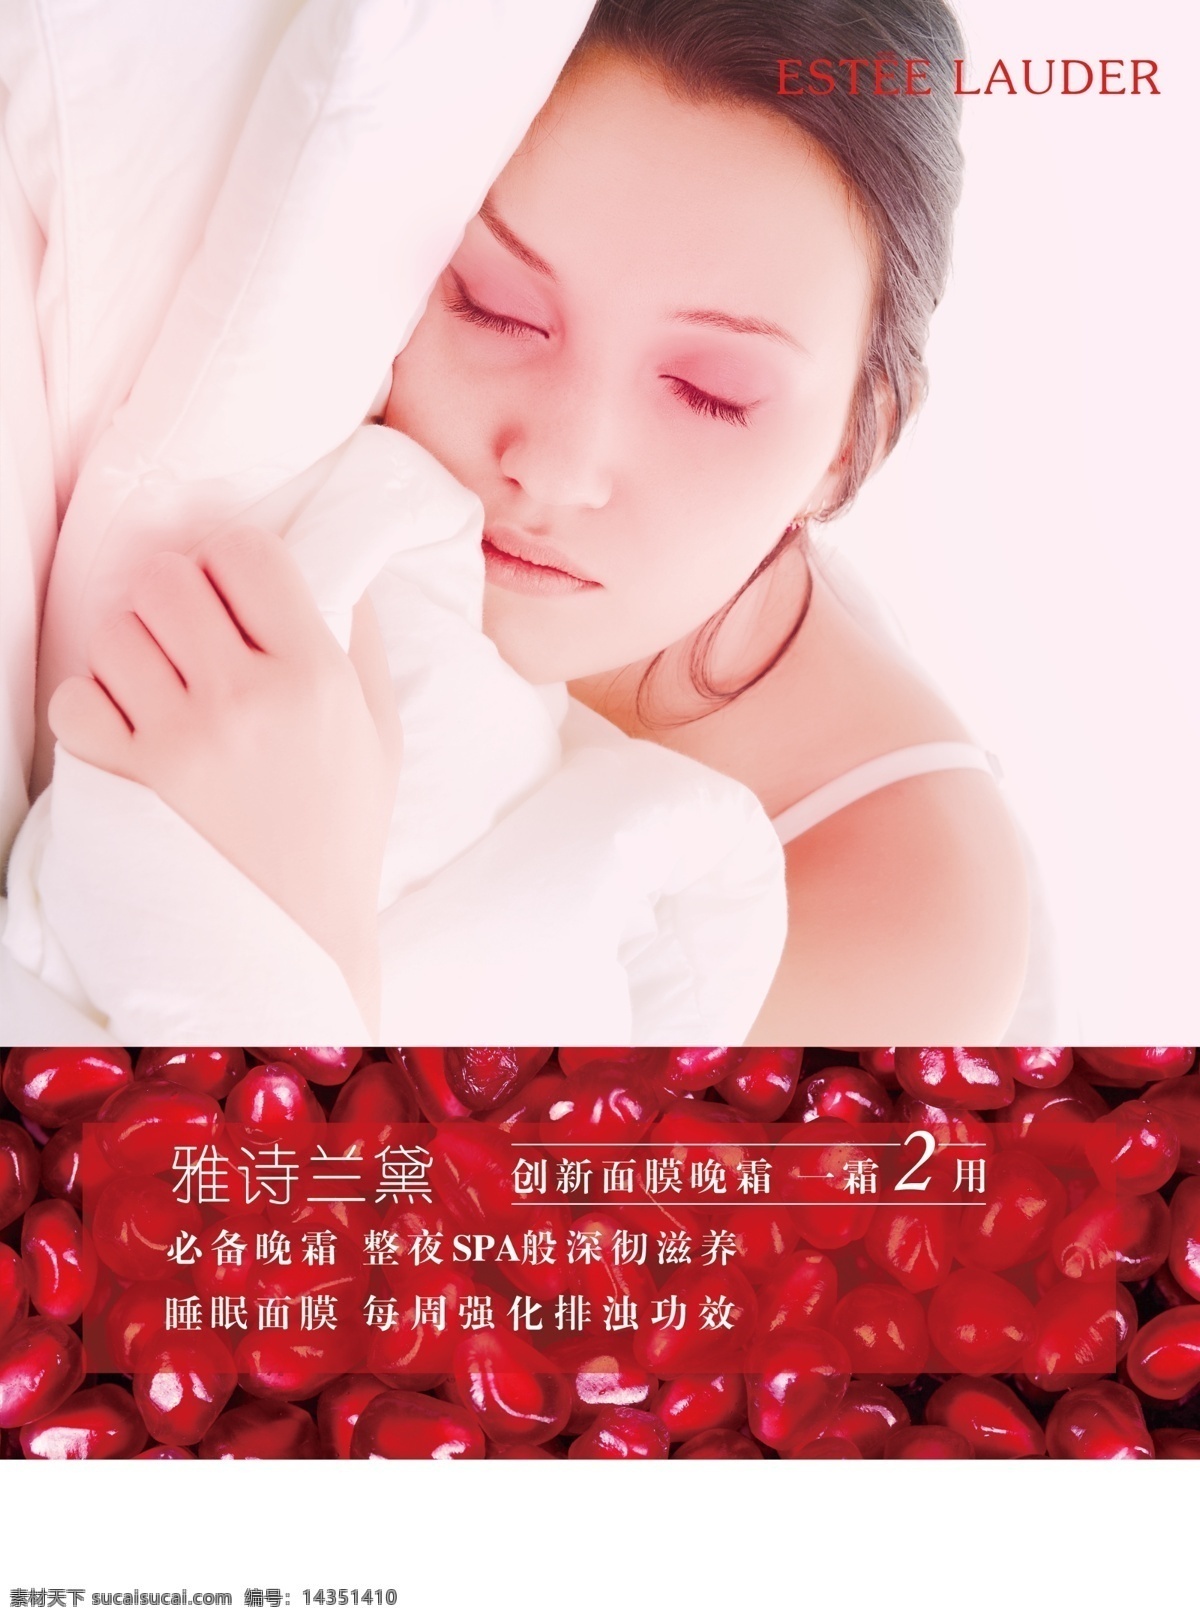 雅诗兰黛 红石 榴 晚霜 睡觉的女人 沉睡 石榴籽 化妆品海报 广告设计模板 源文件